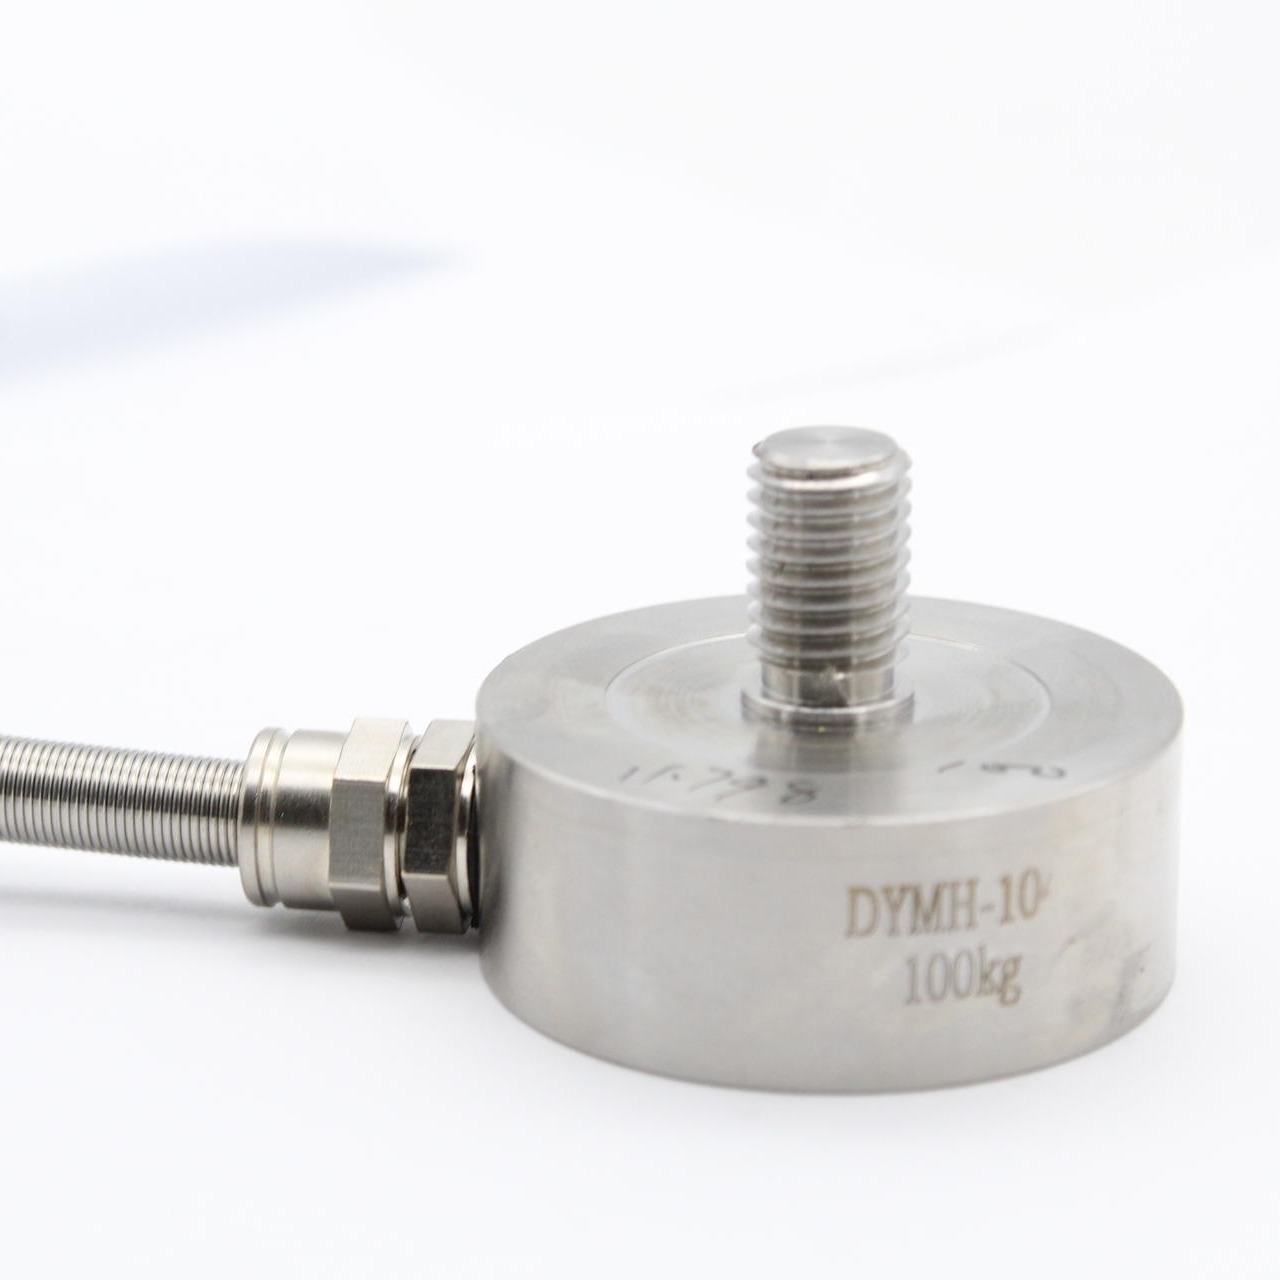 大洋厂家直销 微型膜盒称重传感器 测力螺杆拉压力高精度DYMH-104 测力传感器重量传感器 拉力传感器 压力传感 测力图片